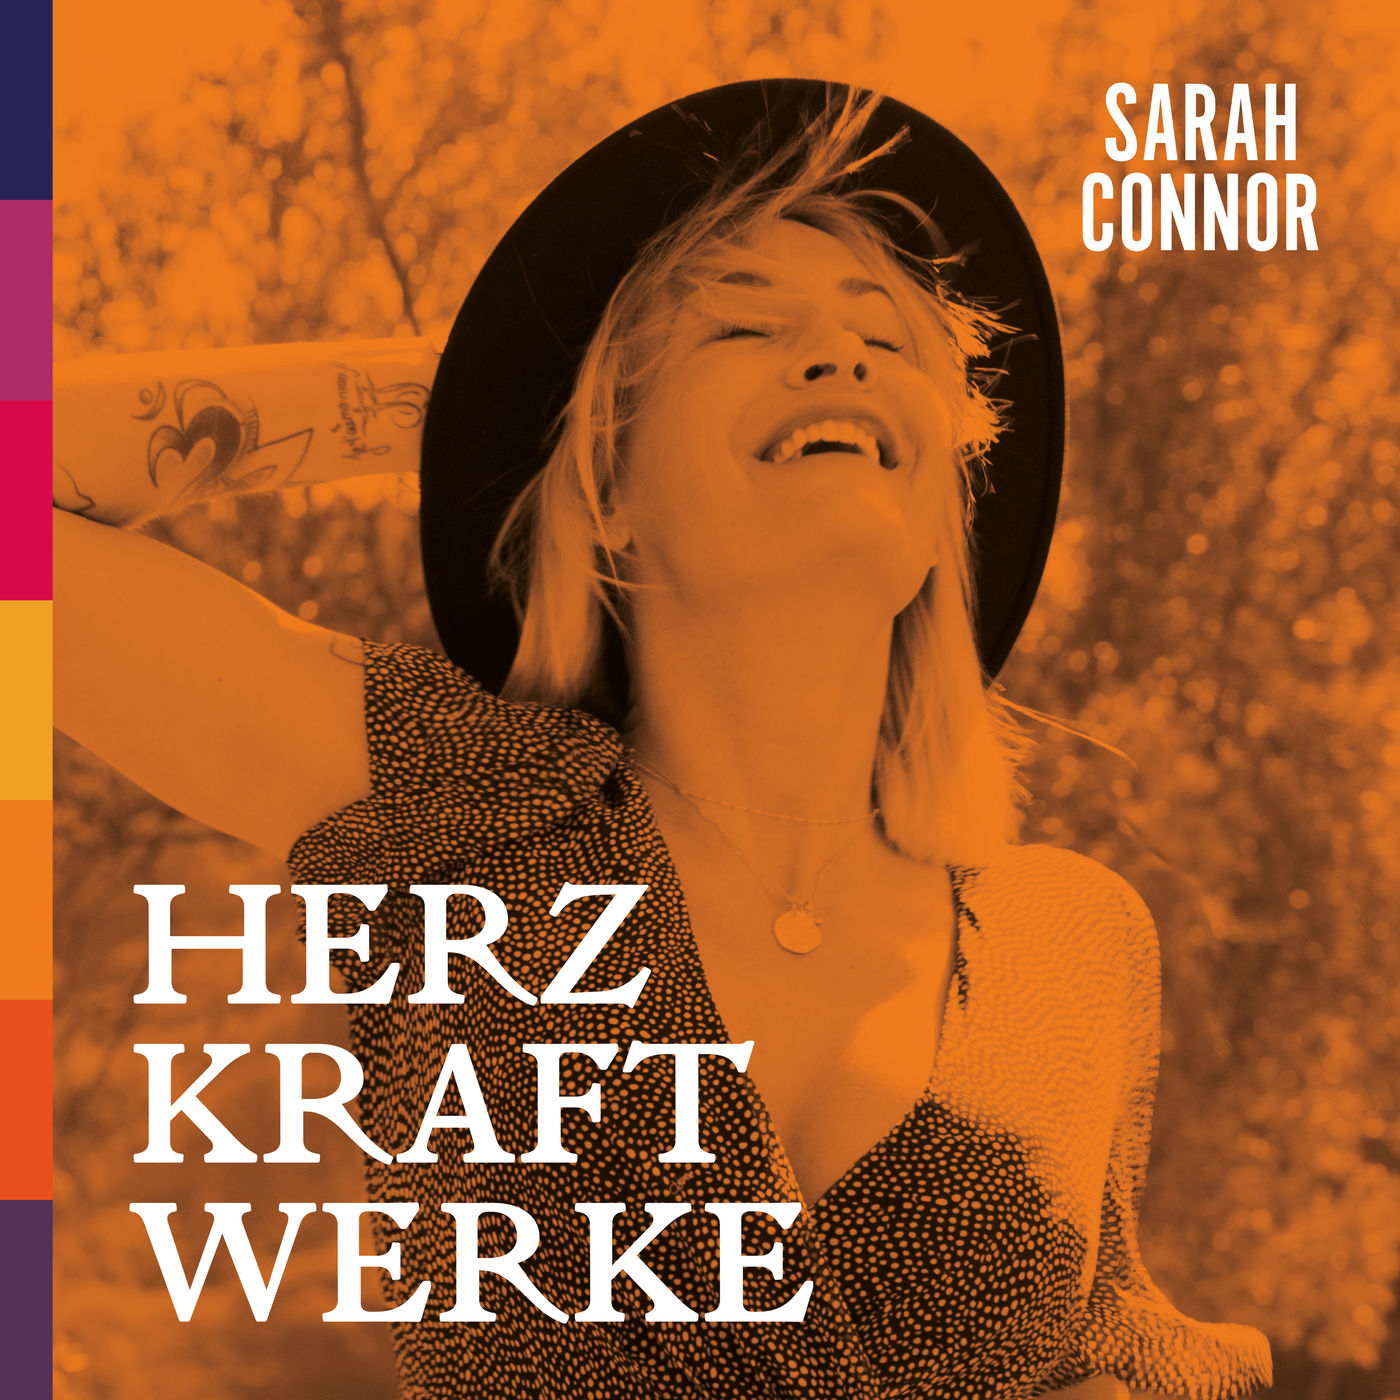 Sarah Connor - HERZ KRAFT WERKE (Special Deluxe Edition) (2019/2021) [FLAC 24bit/48kHz]